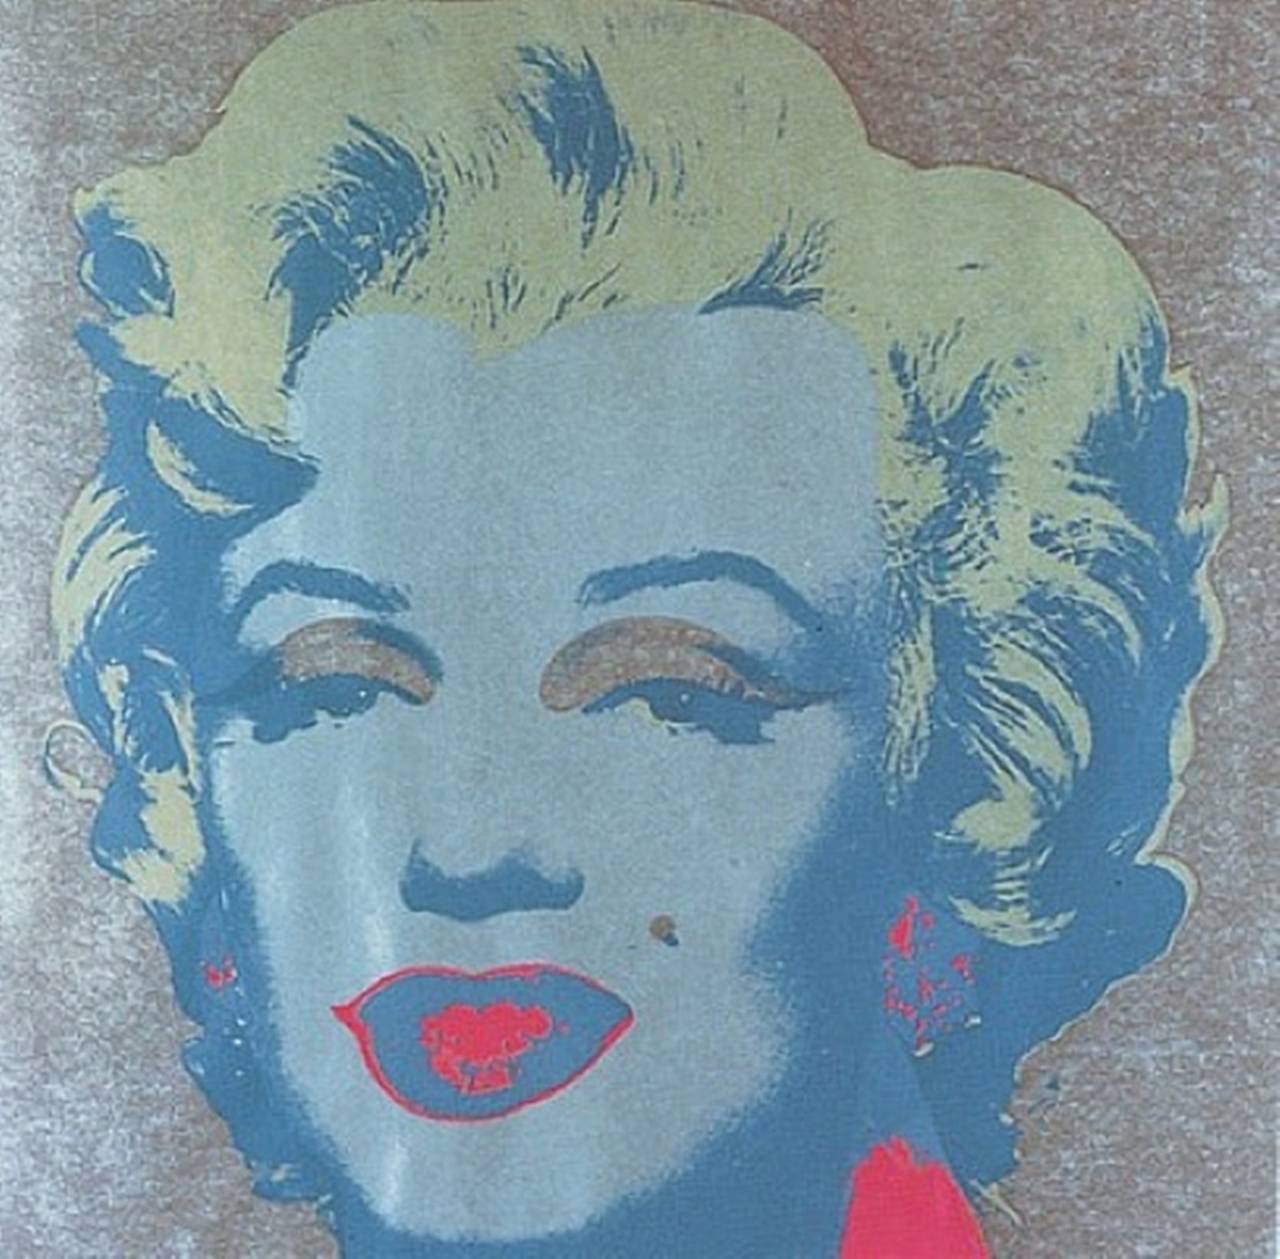 Marilyn Monroe (II.26) - Print by Andy Warhol